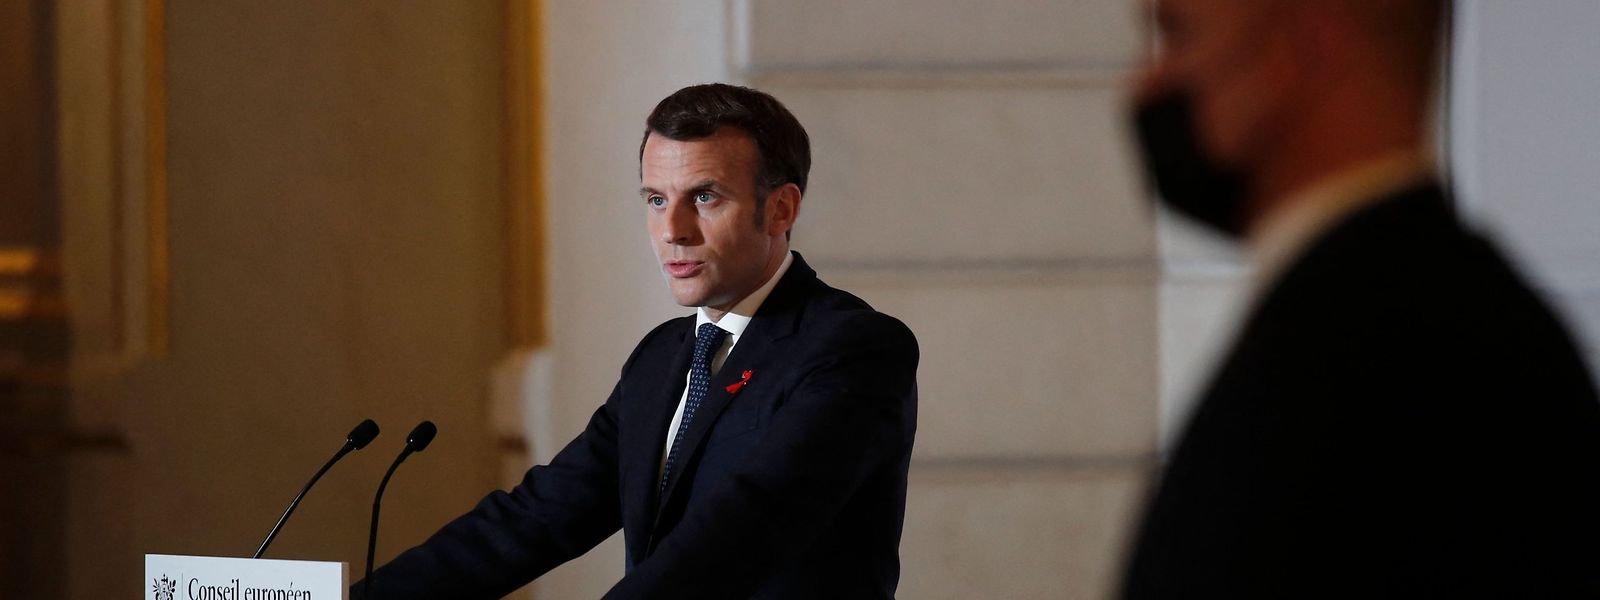 Le président français fera une allocution ce mercredi à 20h pour annoncer ses décisions.